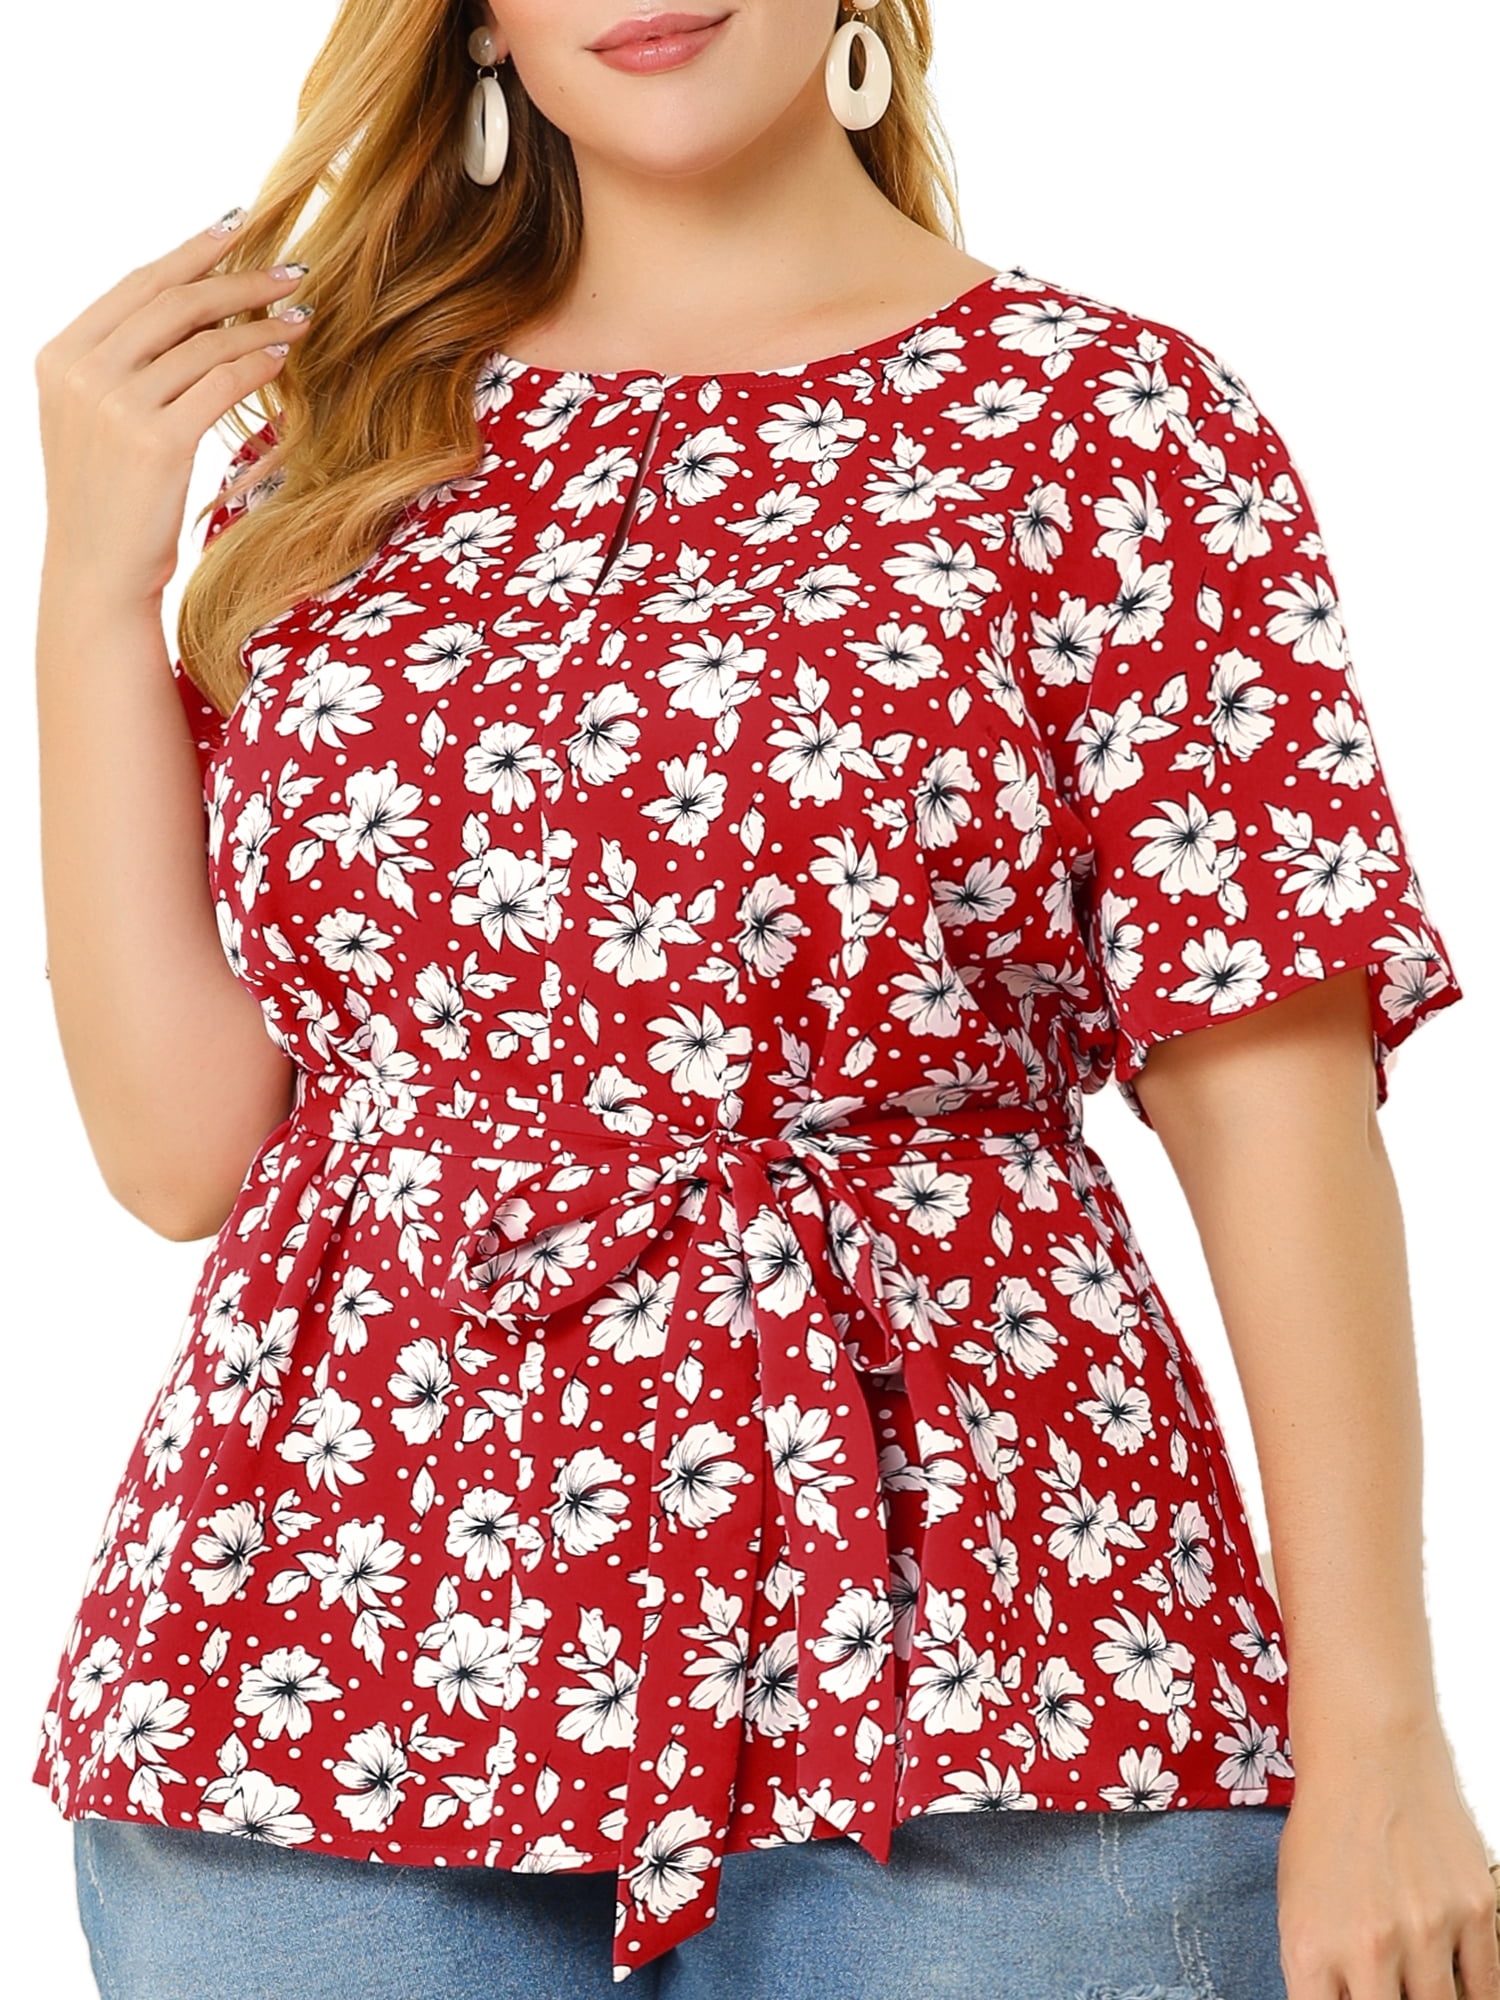 Unique Bargains Women's Plus Size Summer Ruffle Short Sleeve Tops Chiffon  Floral Blouse 